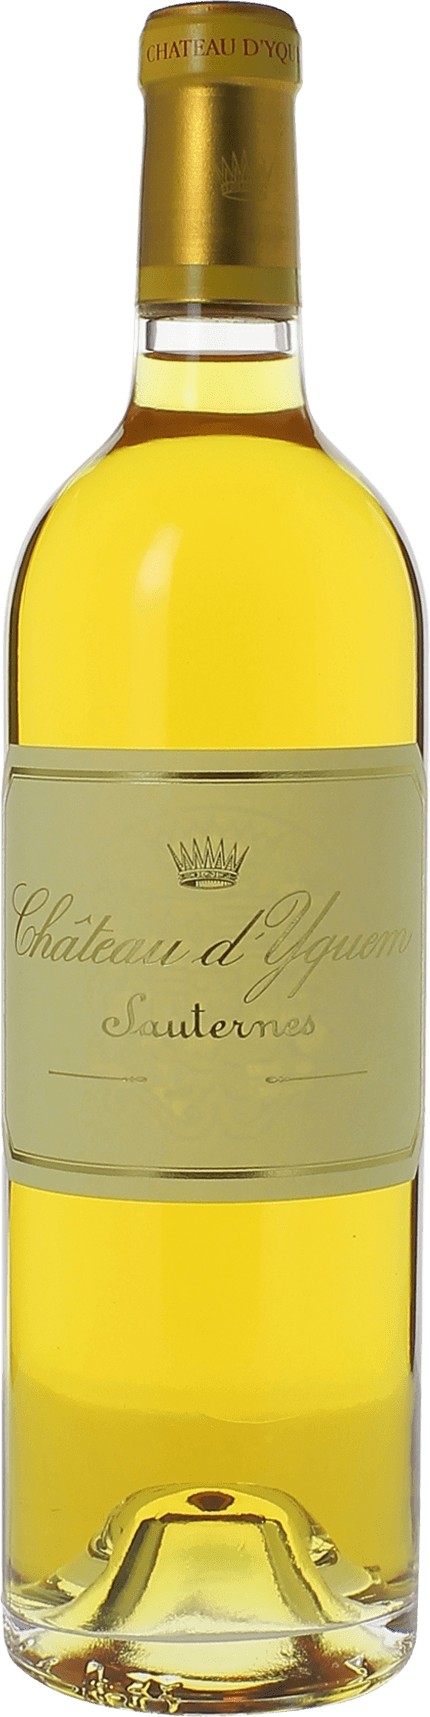 Yquem (disponible dbut avril) 1997 1er Grand cru class Sauternes, Bordeaux blanc